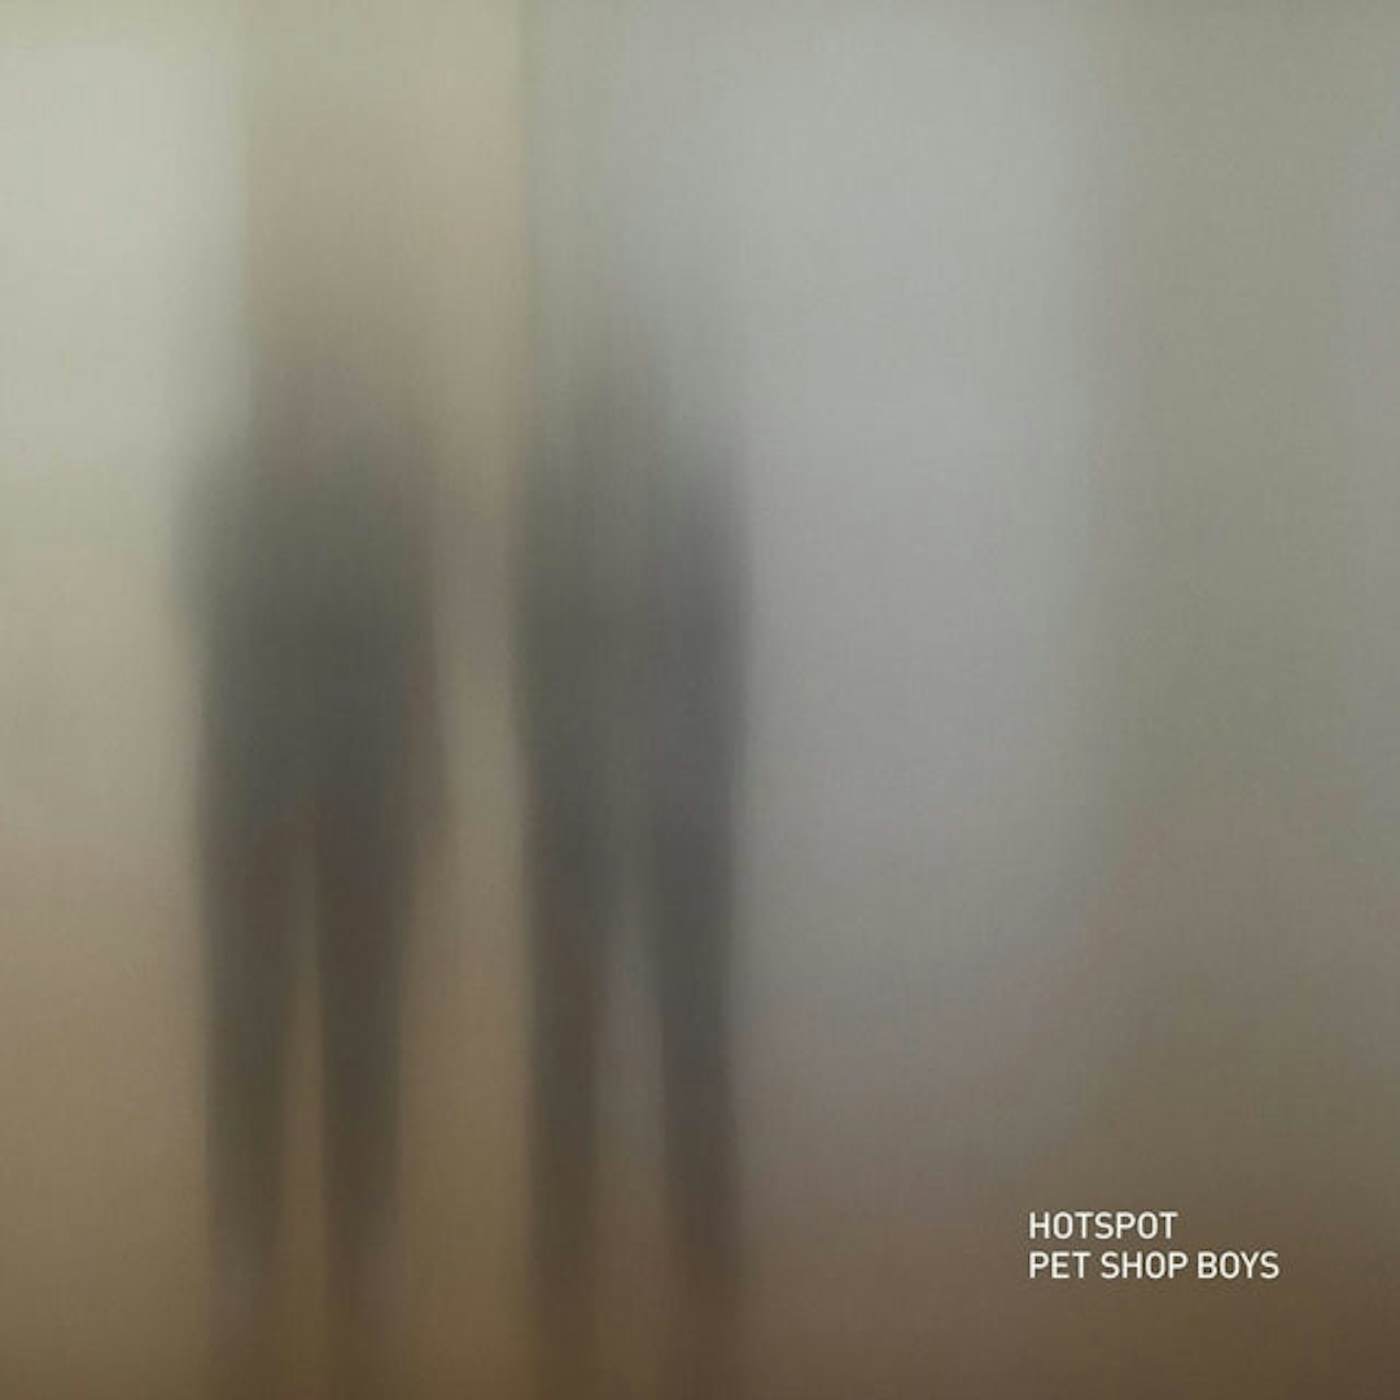 Pet Shop Boys LP Vinyl Record - Hotspot